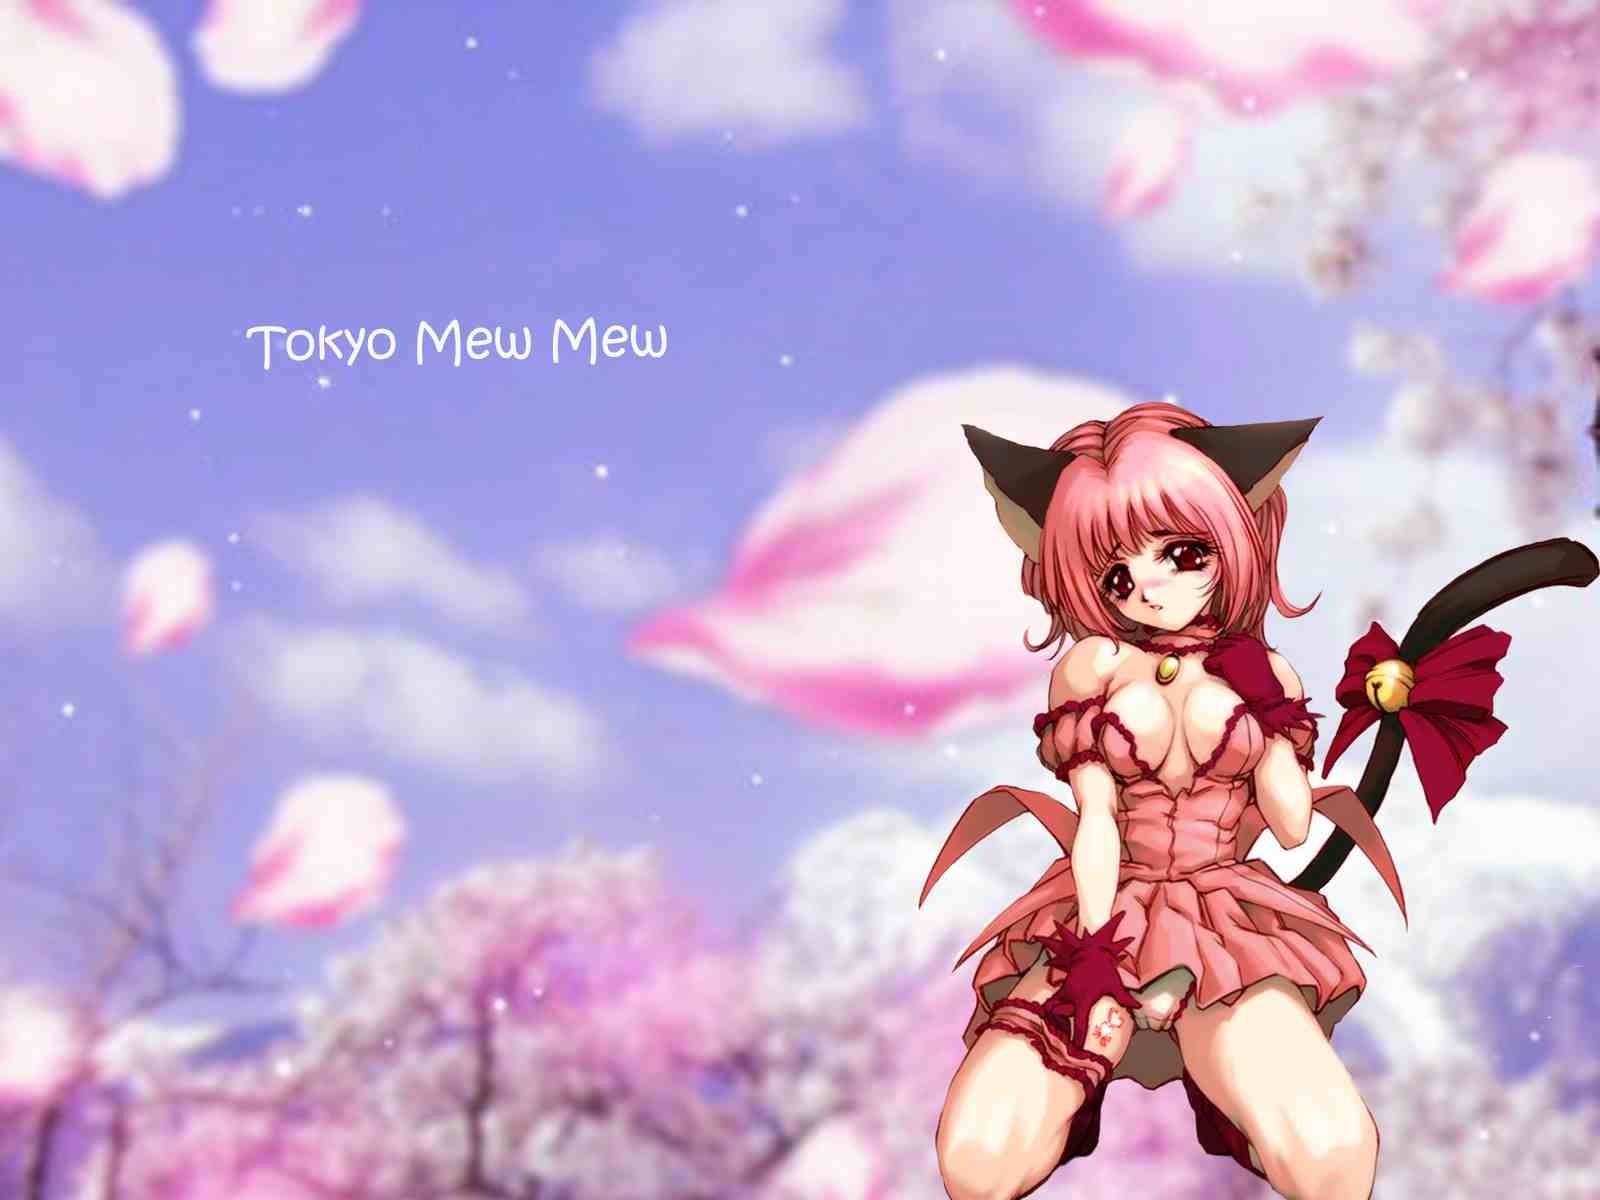 Meow meow power! Tokyo mew mew Zoey cat .es